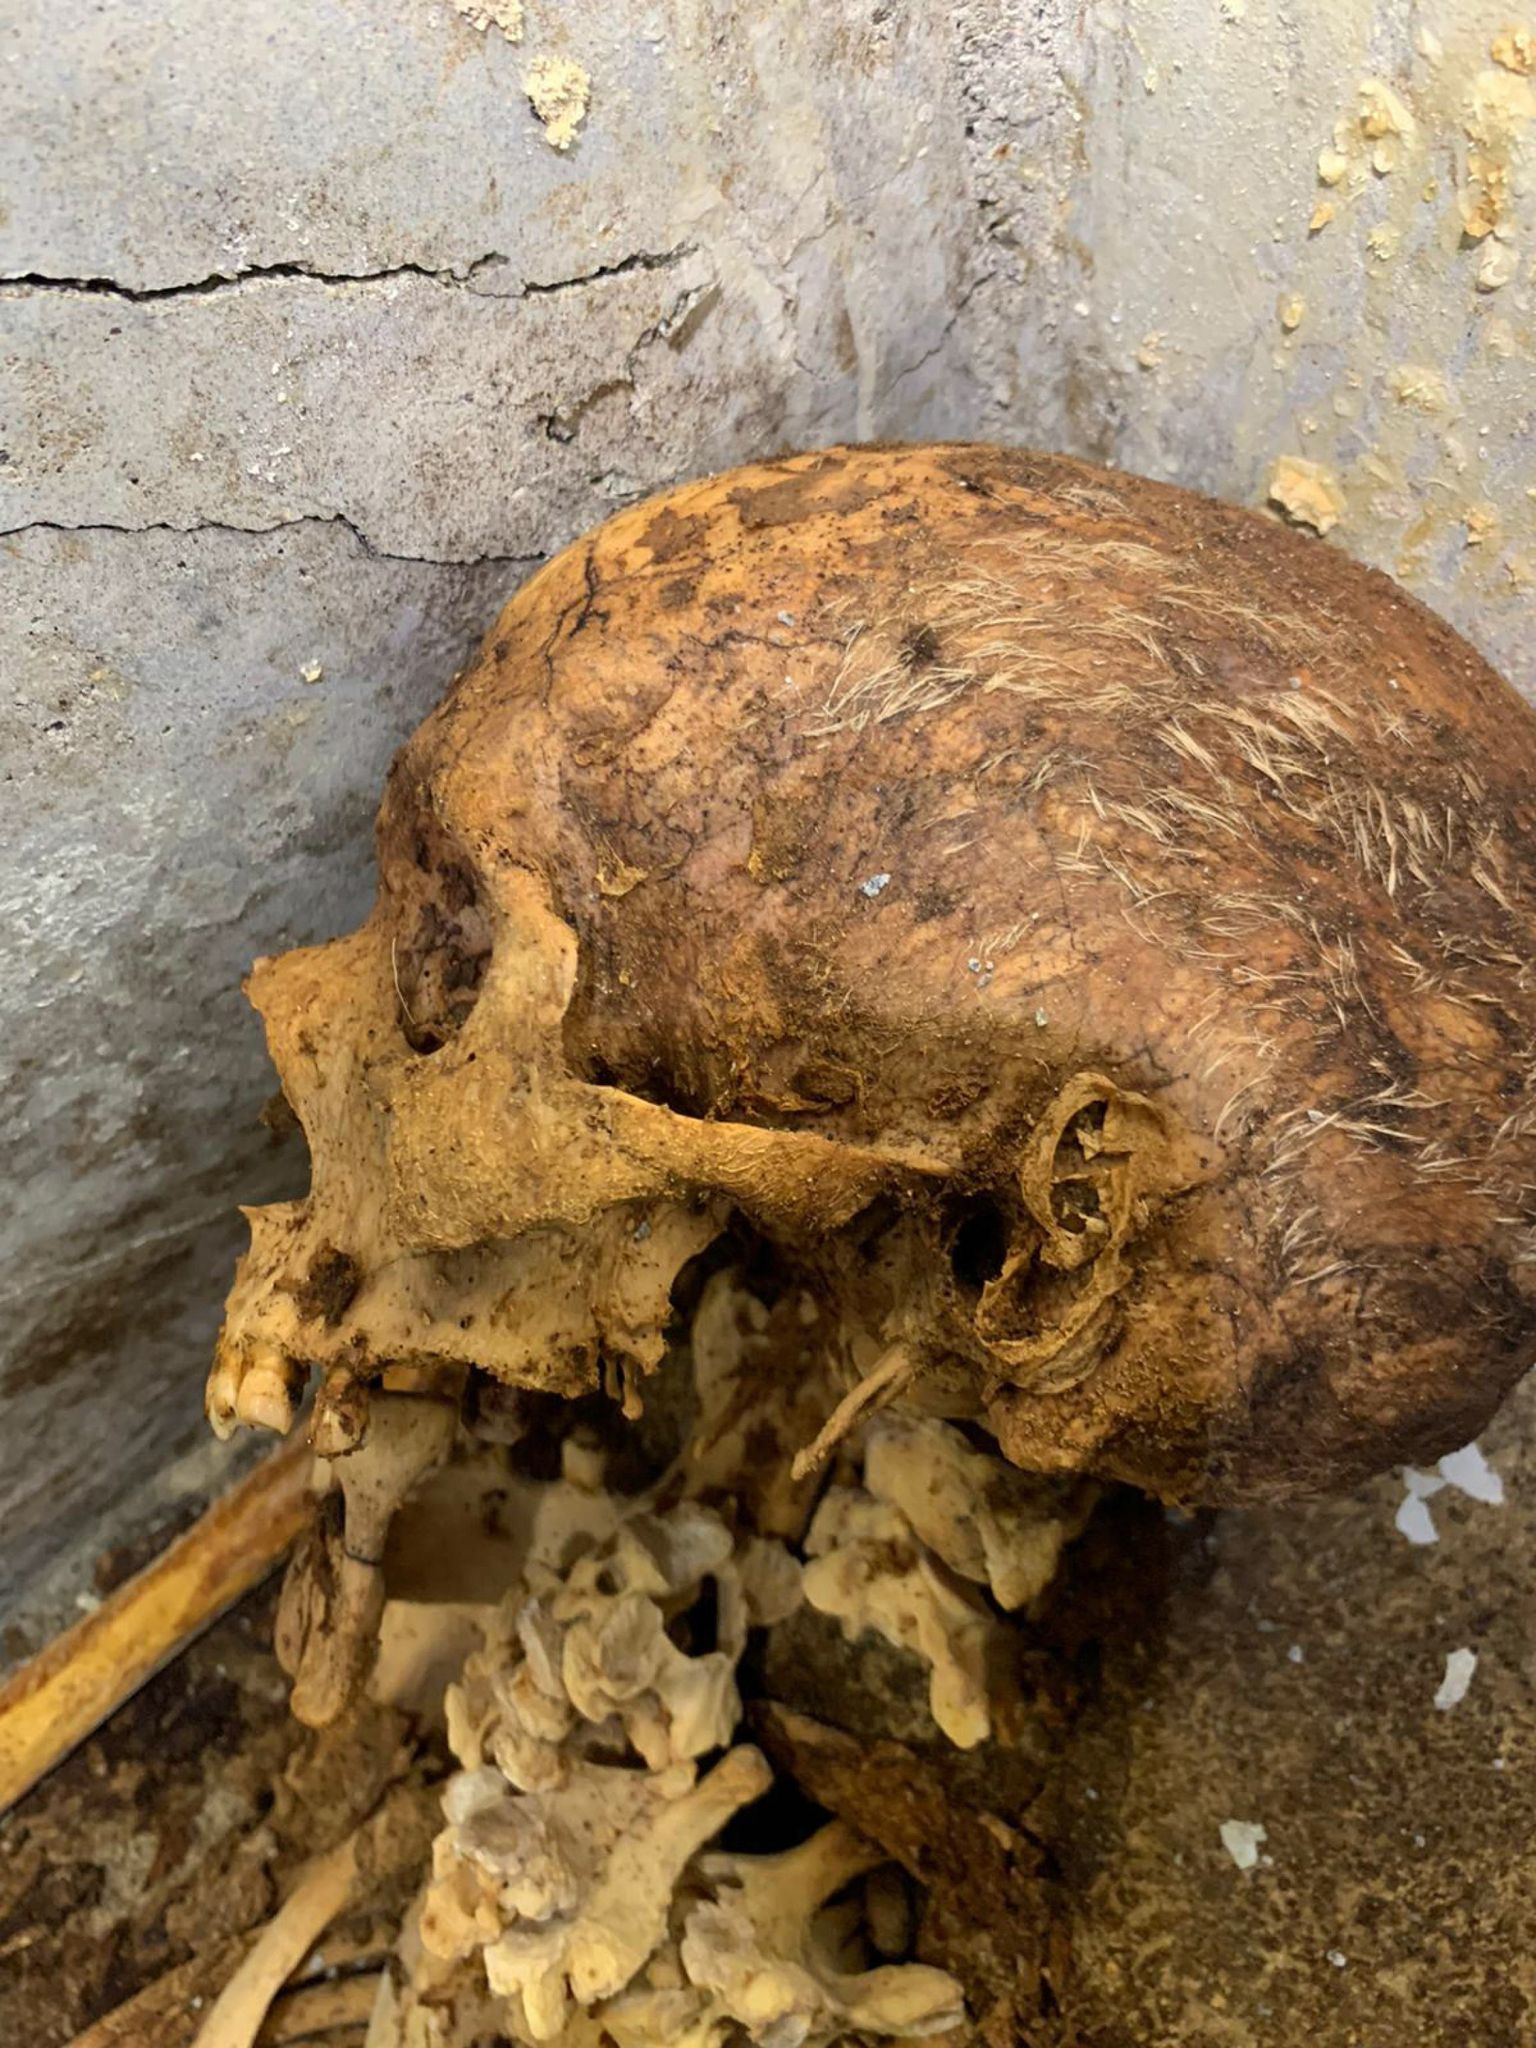 Itaalia Pompei arheloogiapargist leitud pooleldi mumifisteerunud mehe skelett. Pildil on näha koljut, millel on osa juukseid alles